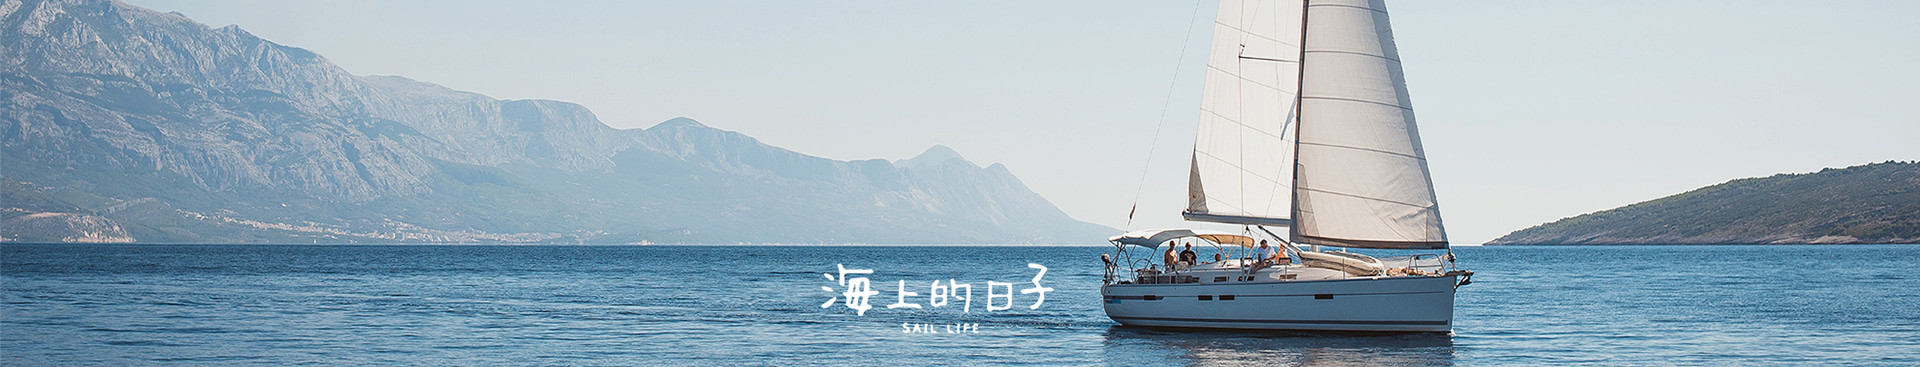 台北淡水 | 私人帆船航行體驗